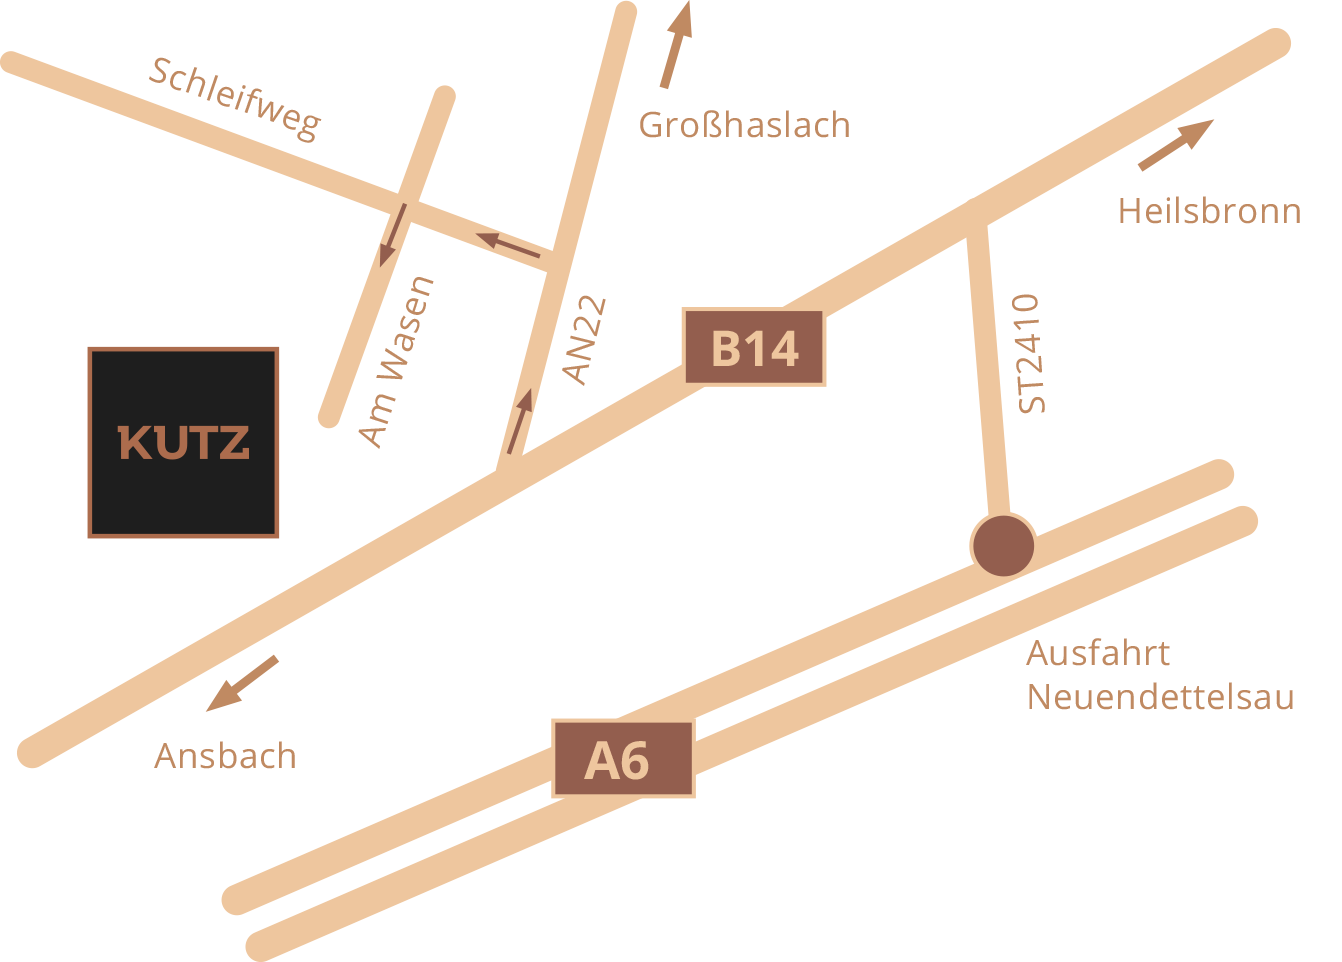 Karte: Sie finden unsere Ausstellung in Petersaurach in West-Mittelfranken. Über die B14 ist es von uns nur ein Katzensprung nach Ansbach oder Heilsbronn. Über die Anschlussstelle Neuendettelsau an der A6 erreichen Sie außerdem bequem auch Nürnberg, Schwabach, Fürth, Erlangen oder Regensburg. Auch Orte wie Rothenburg ob der Tauber, Gunzenhausen, Roth, Weißenburg, Zirndorf oder Herzogenaurach gehören zu unserem unmittelbaren Einzugsgebiet.